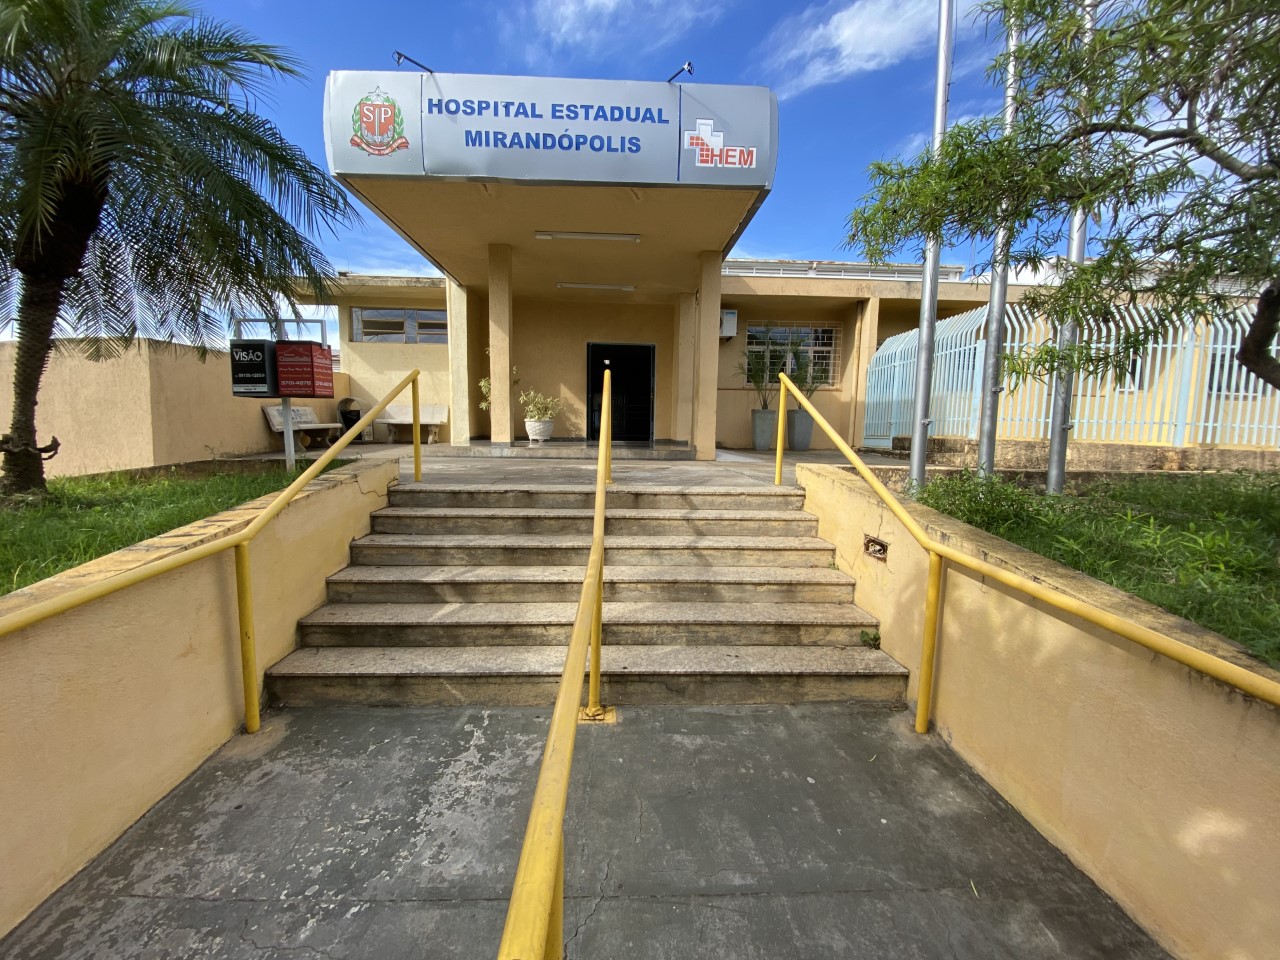 Fundação do ABC assume serviços de emergência e urgência do Hospital Estadual de Mirandópolis; contrato é de R$ 15 milhões por 12 meses